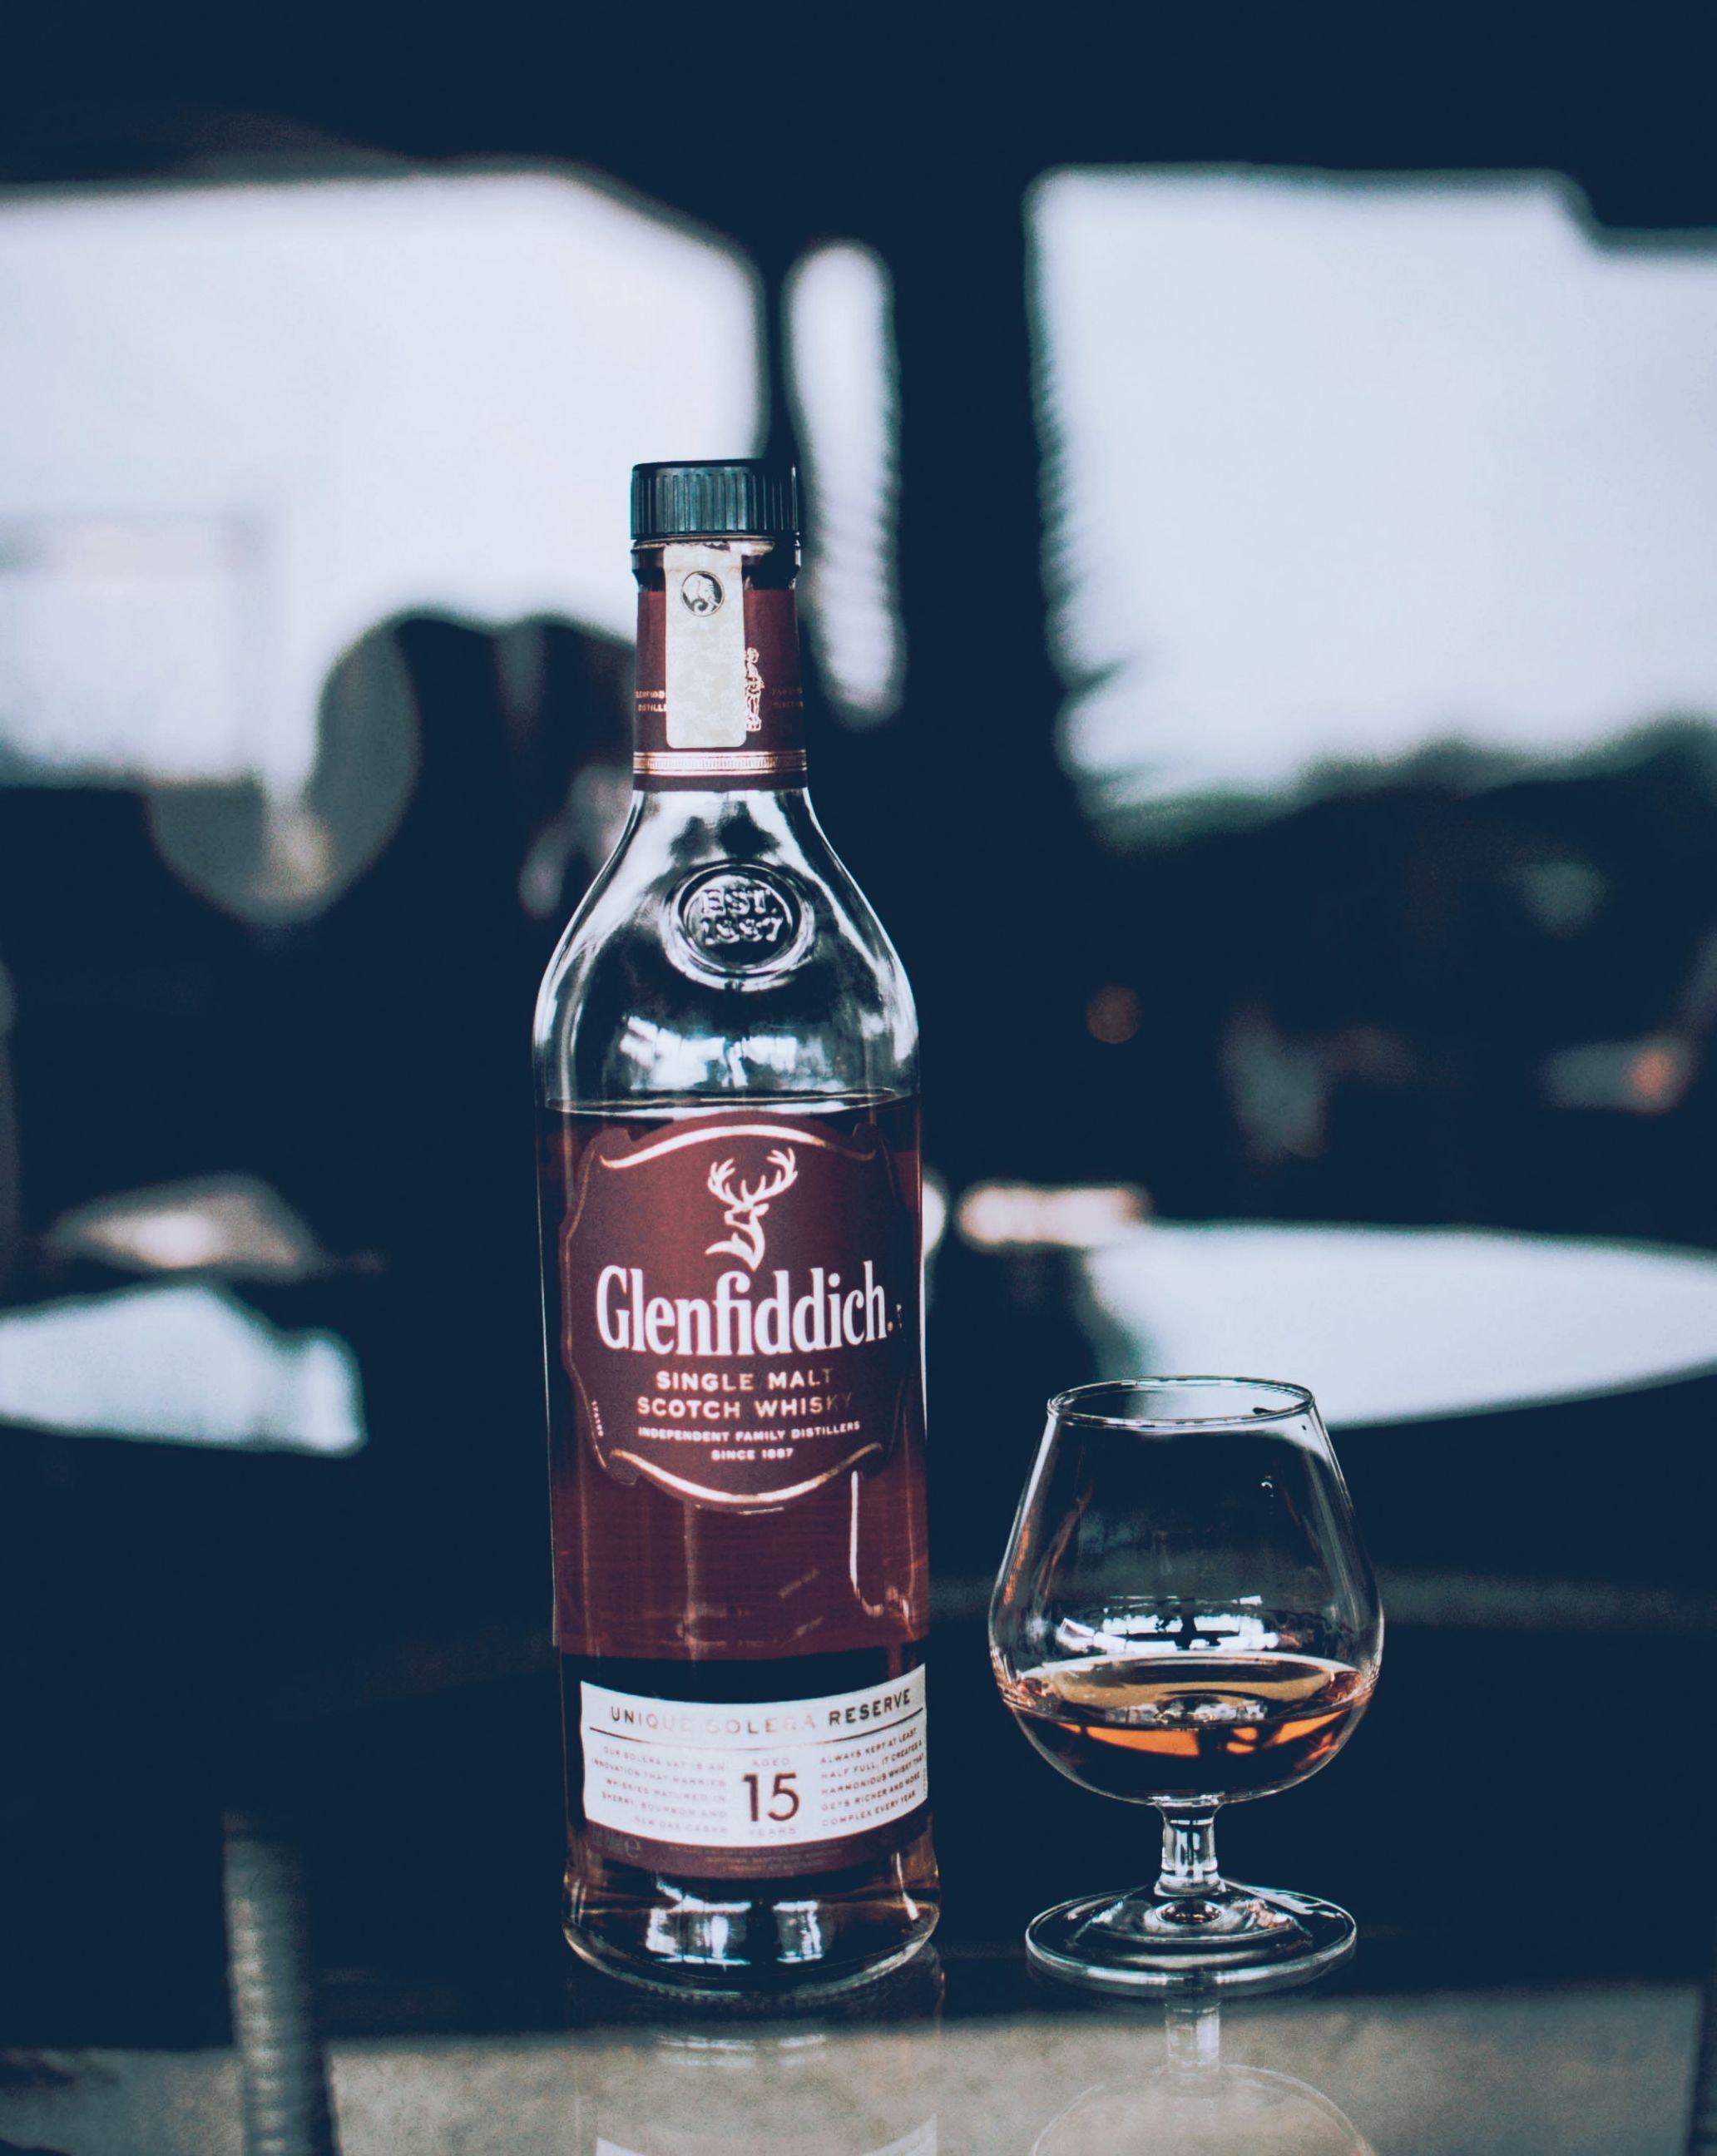 Glenfiddich Bottle Beside Wine Glass · Free